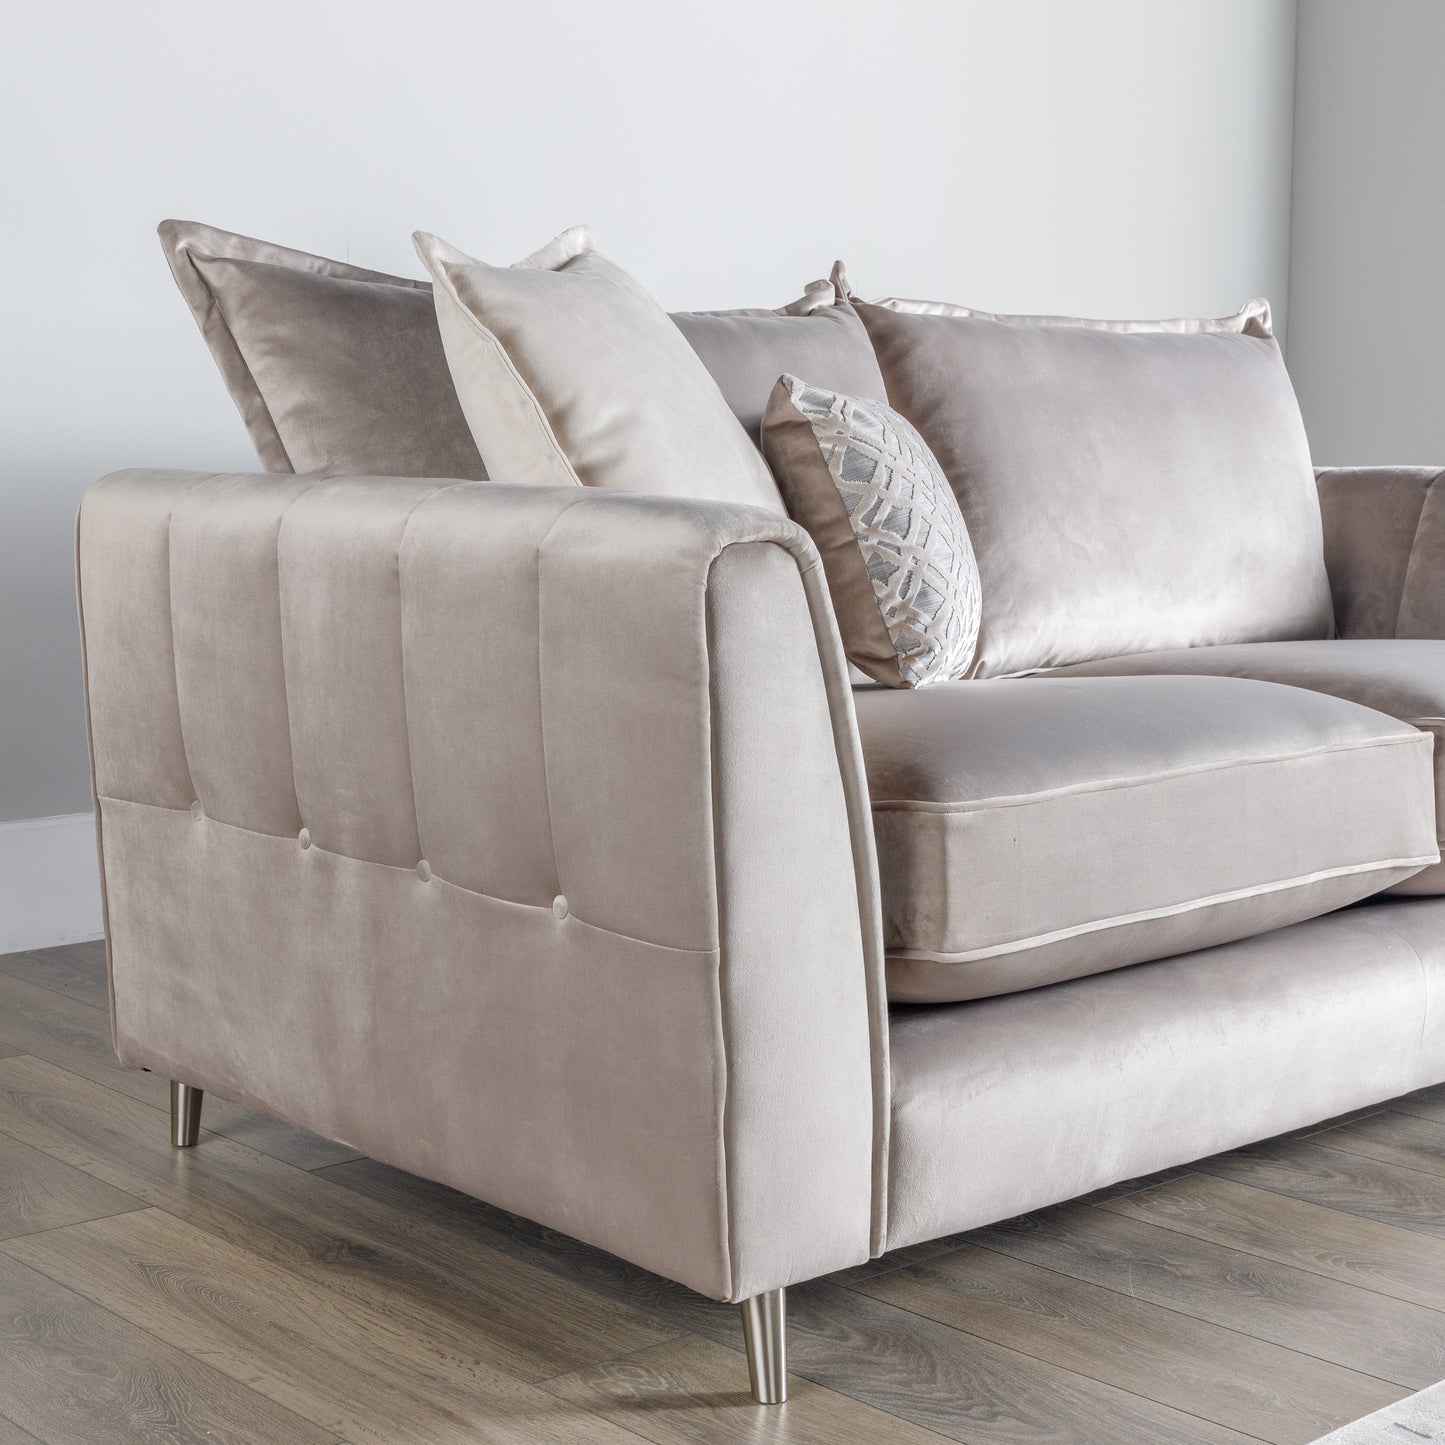 Furniture  -  Nice 3 Seater Sofa  -  60002824